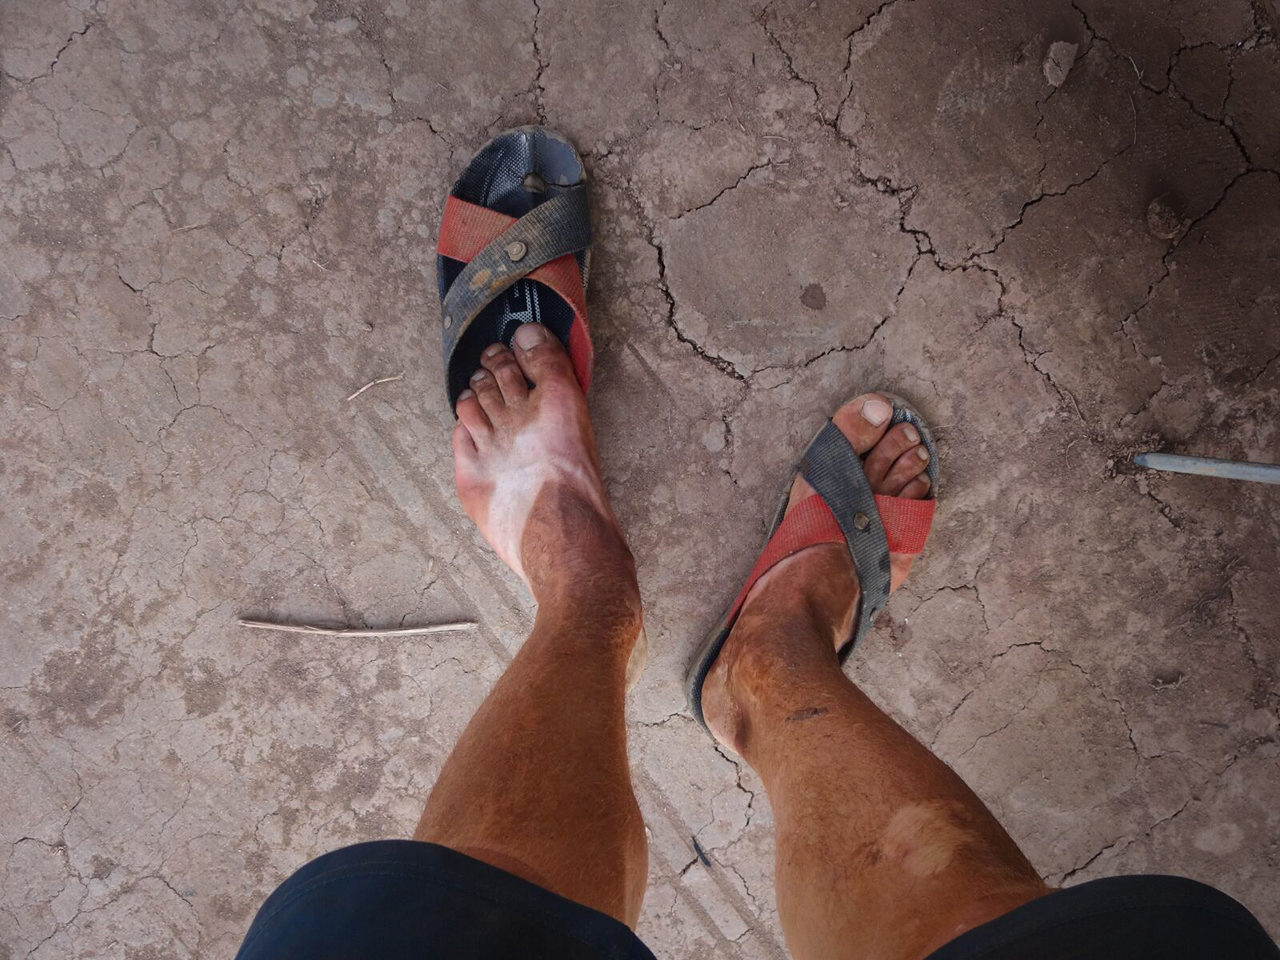 Dusty legs in Cambodia